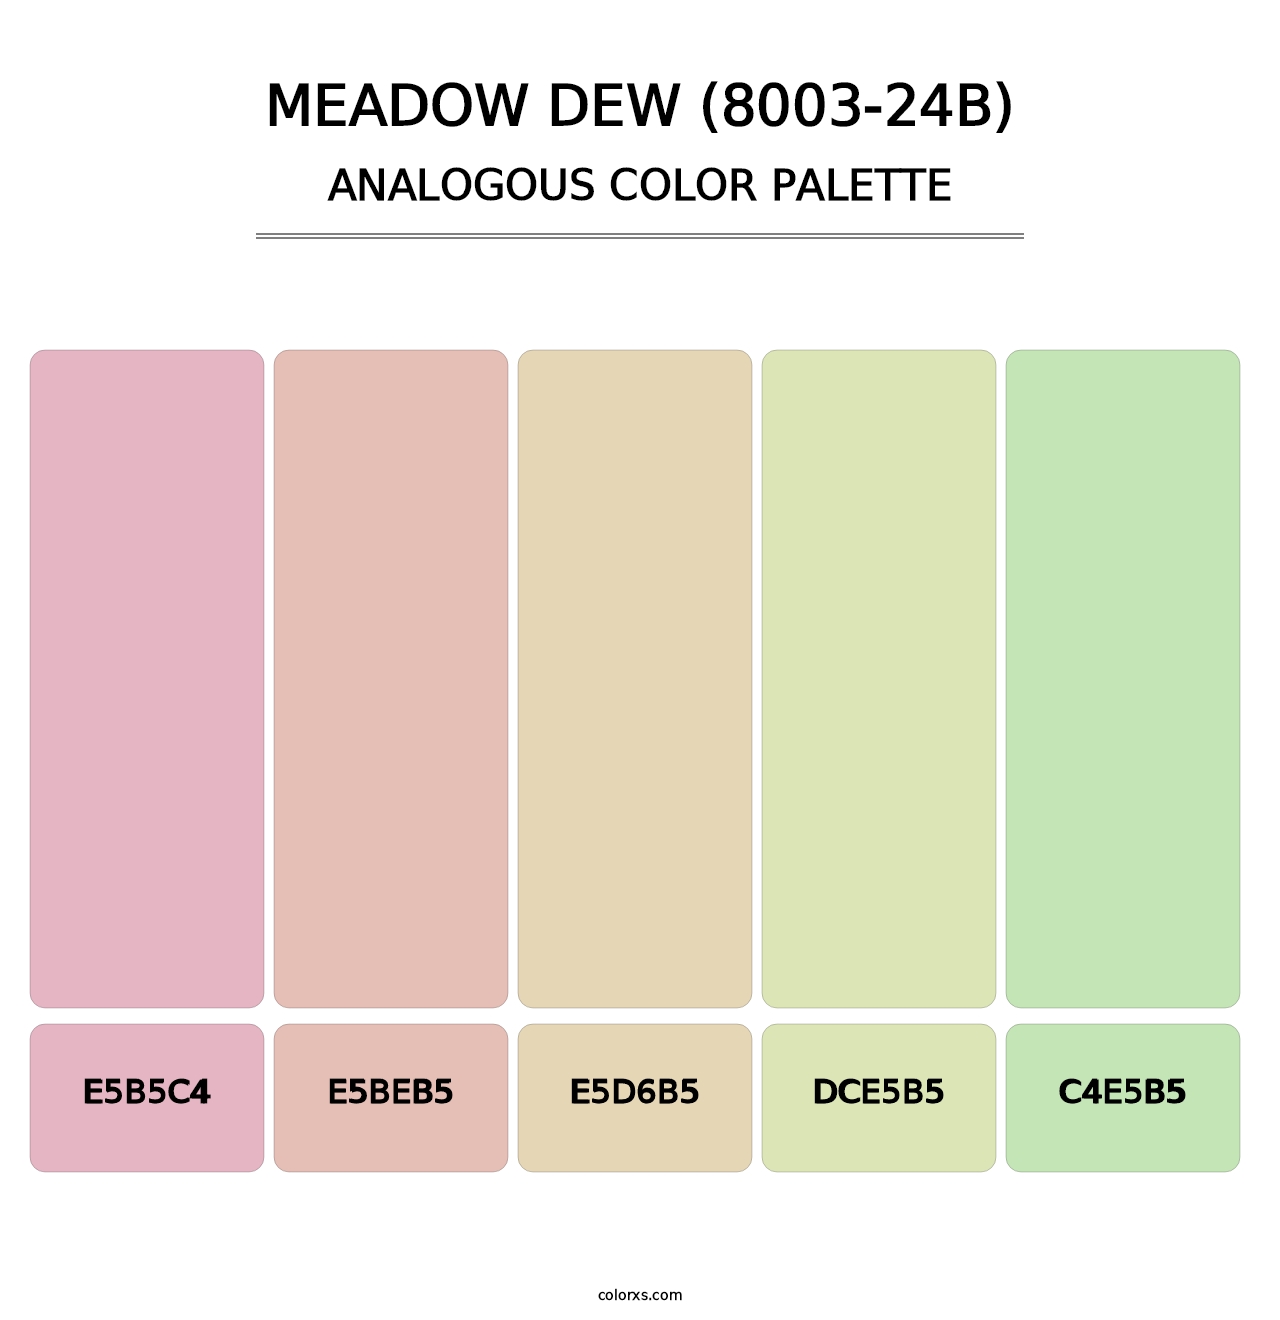 Meadow Dew (8003-24B) - Analogous Color Palette